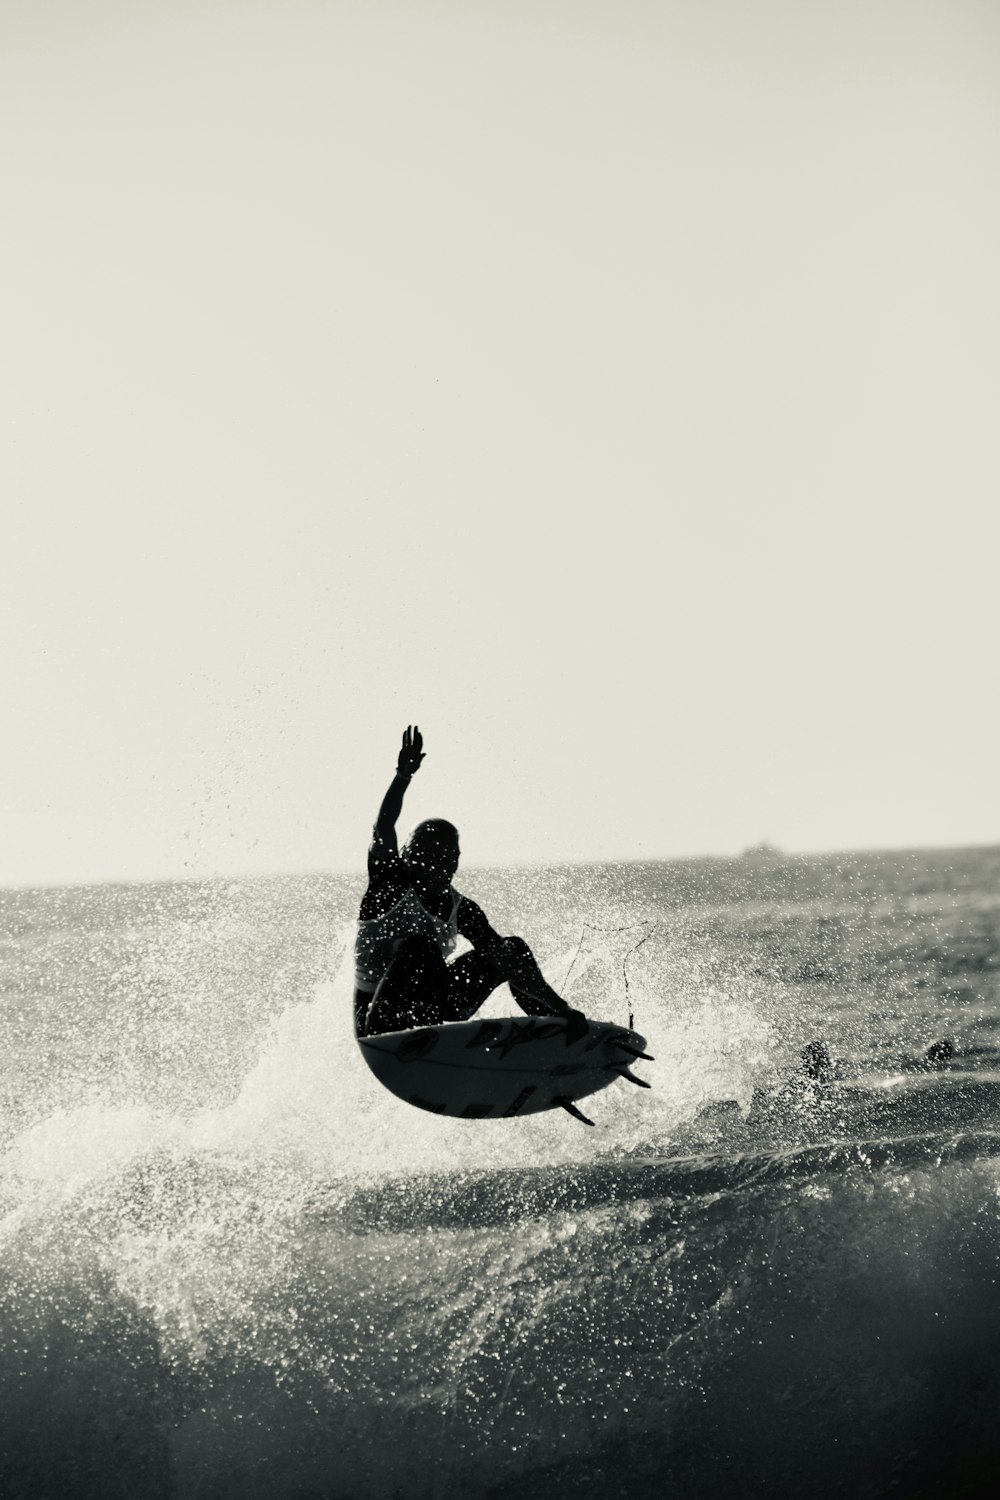 a man riding a surfboard